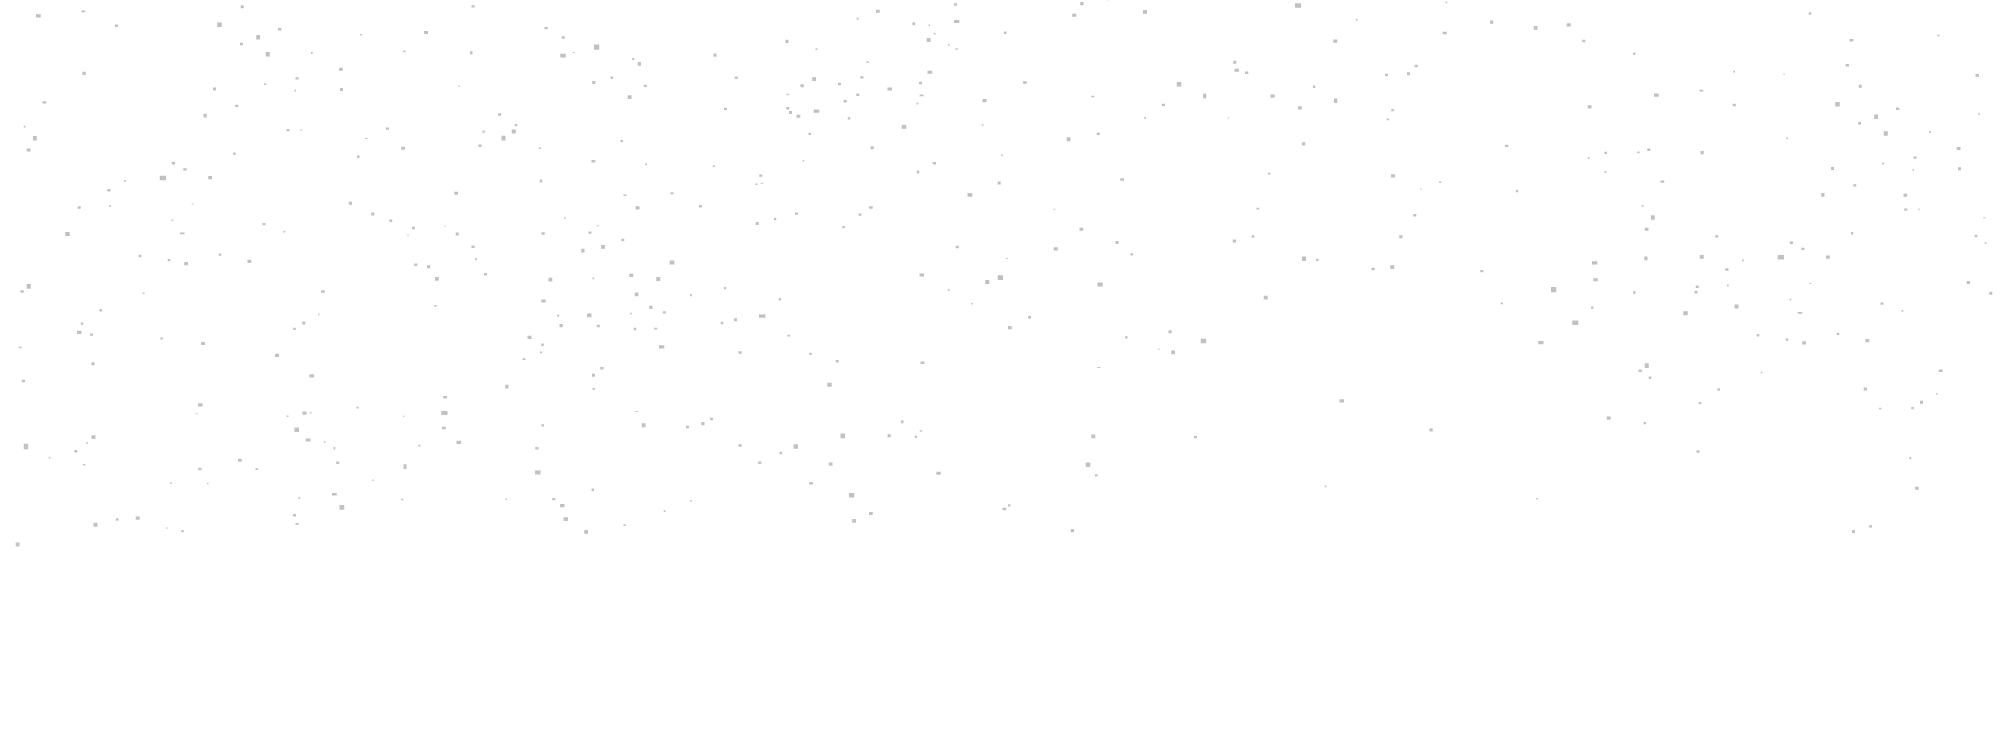 mgt pattern stars